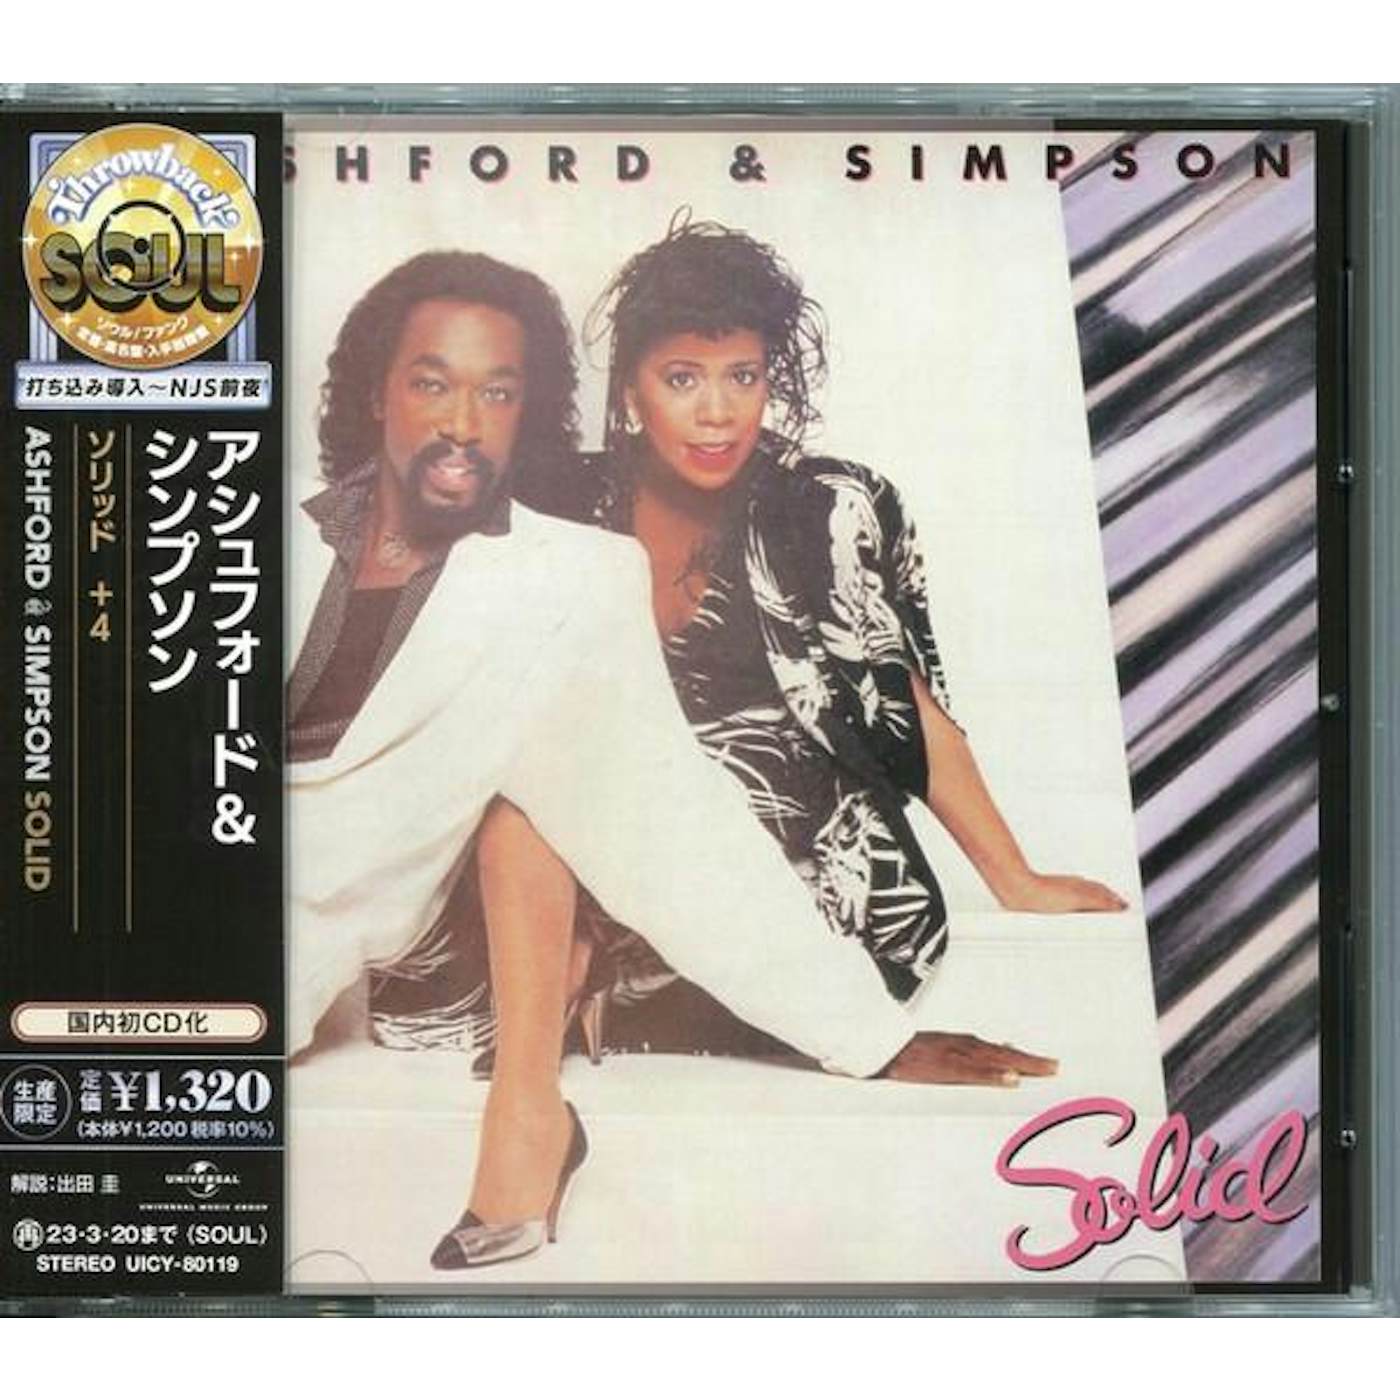 Ashford & Simpson SOLID (LIMITED) CD